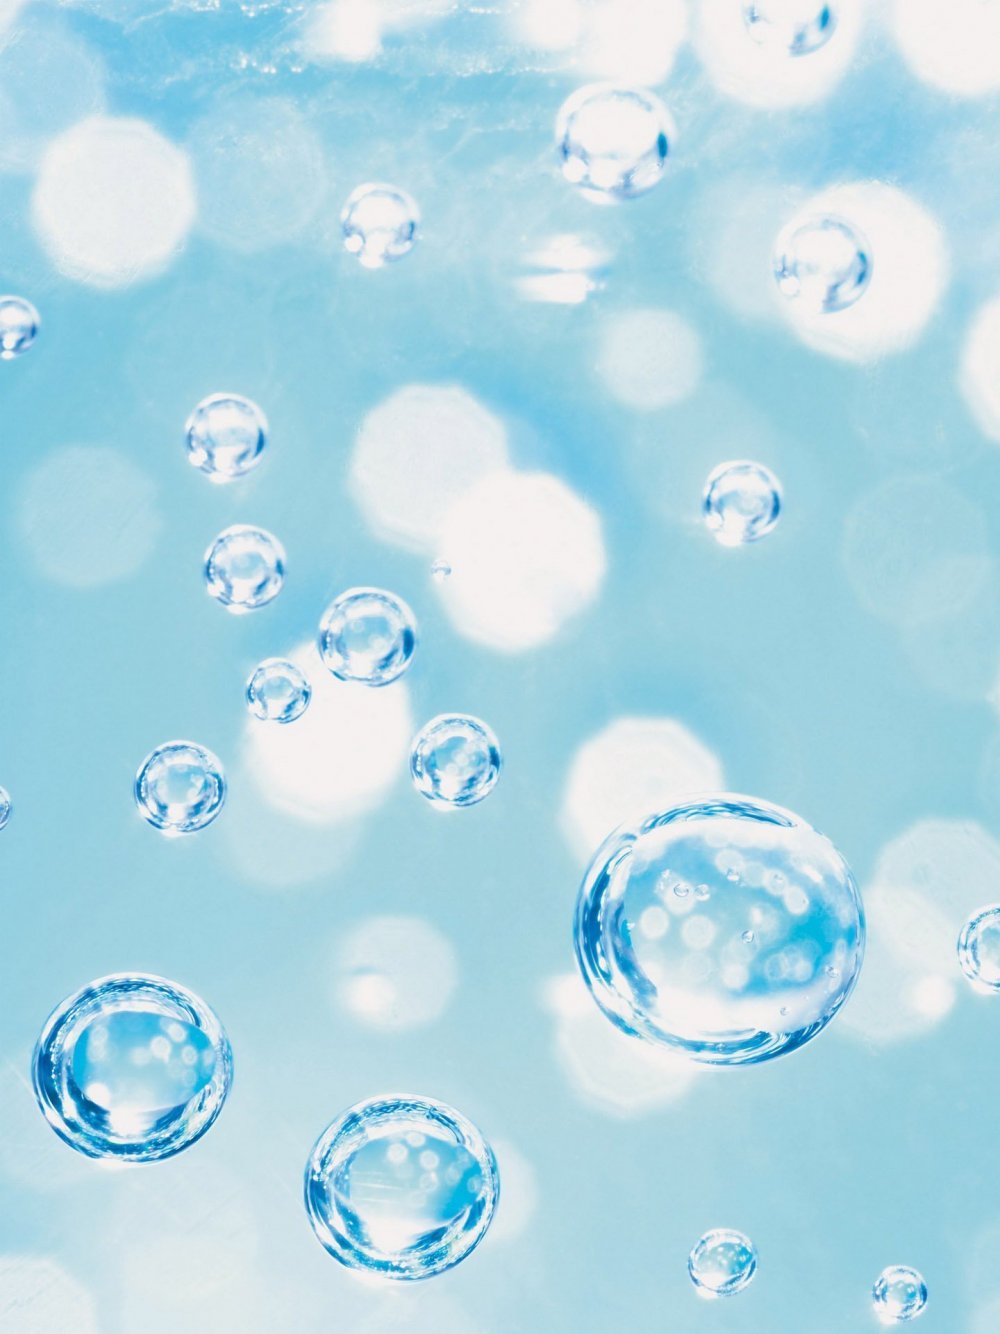 Фон вода с пузырьками